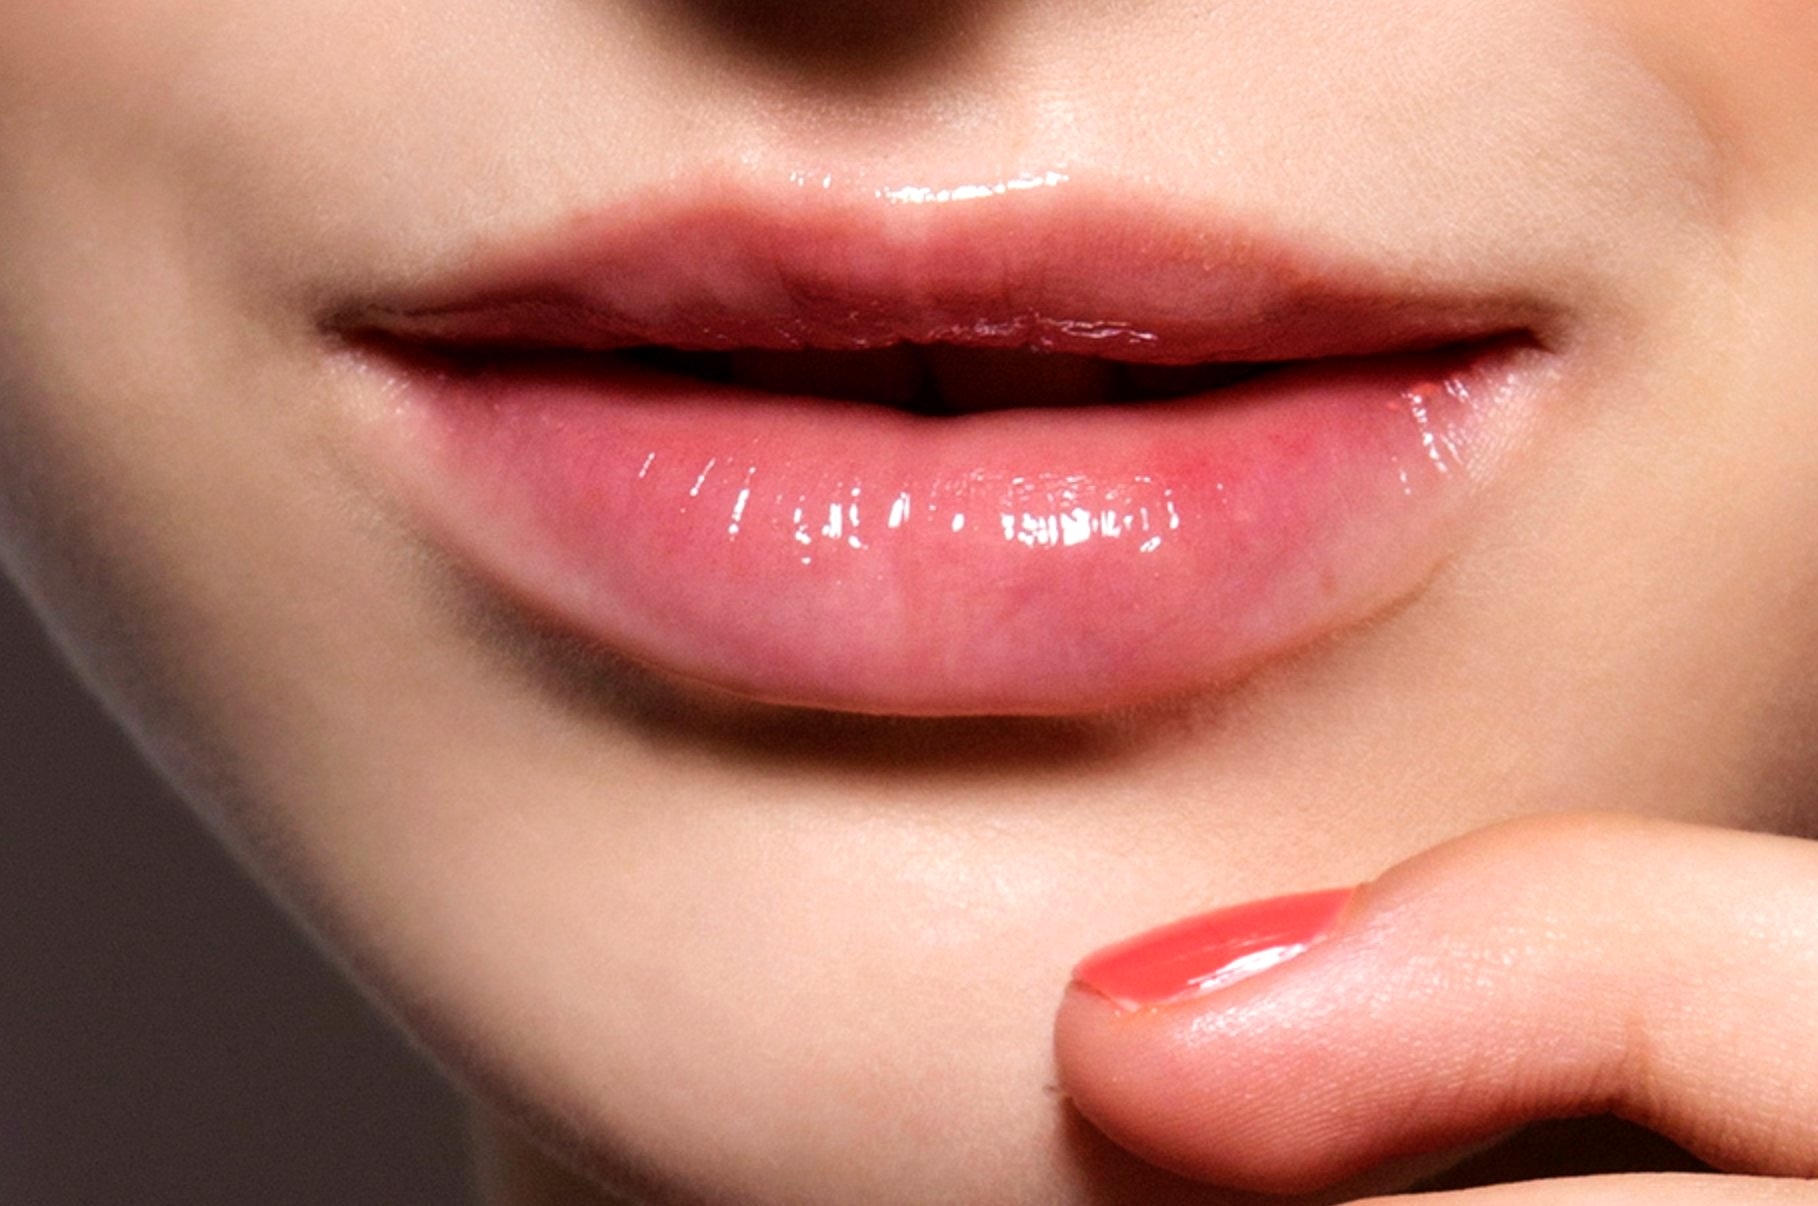 Pink basah. Женские губы. Средние губы. Здоровые губы. Красивые губы.